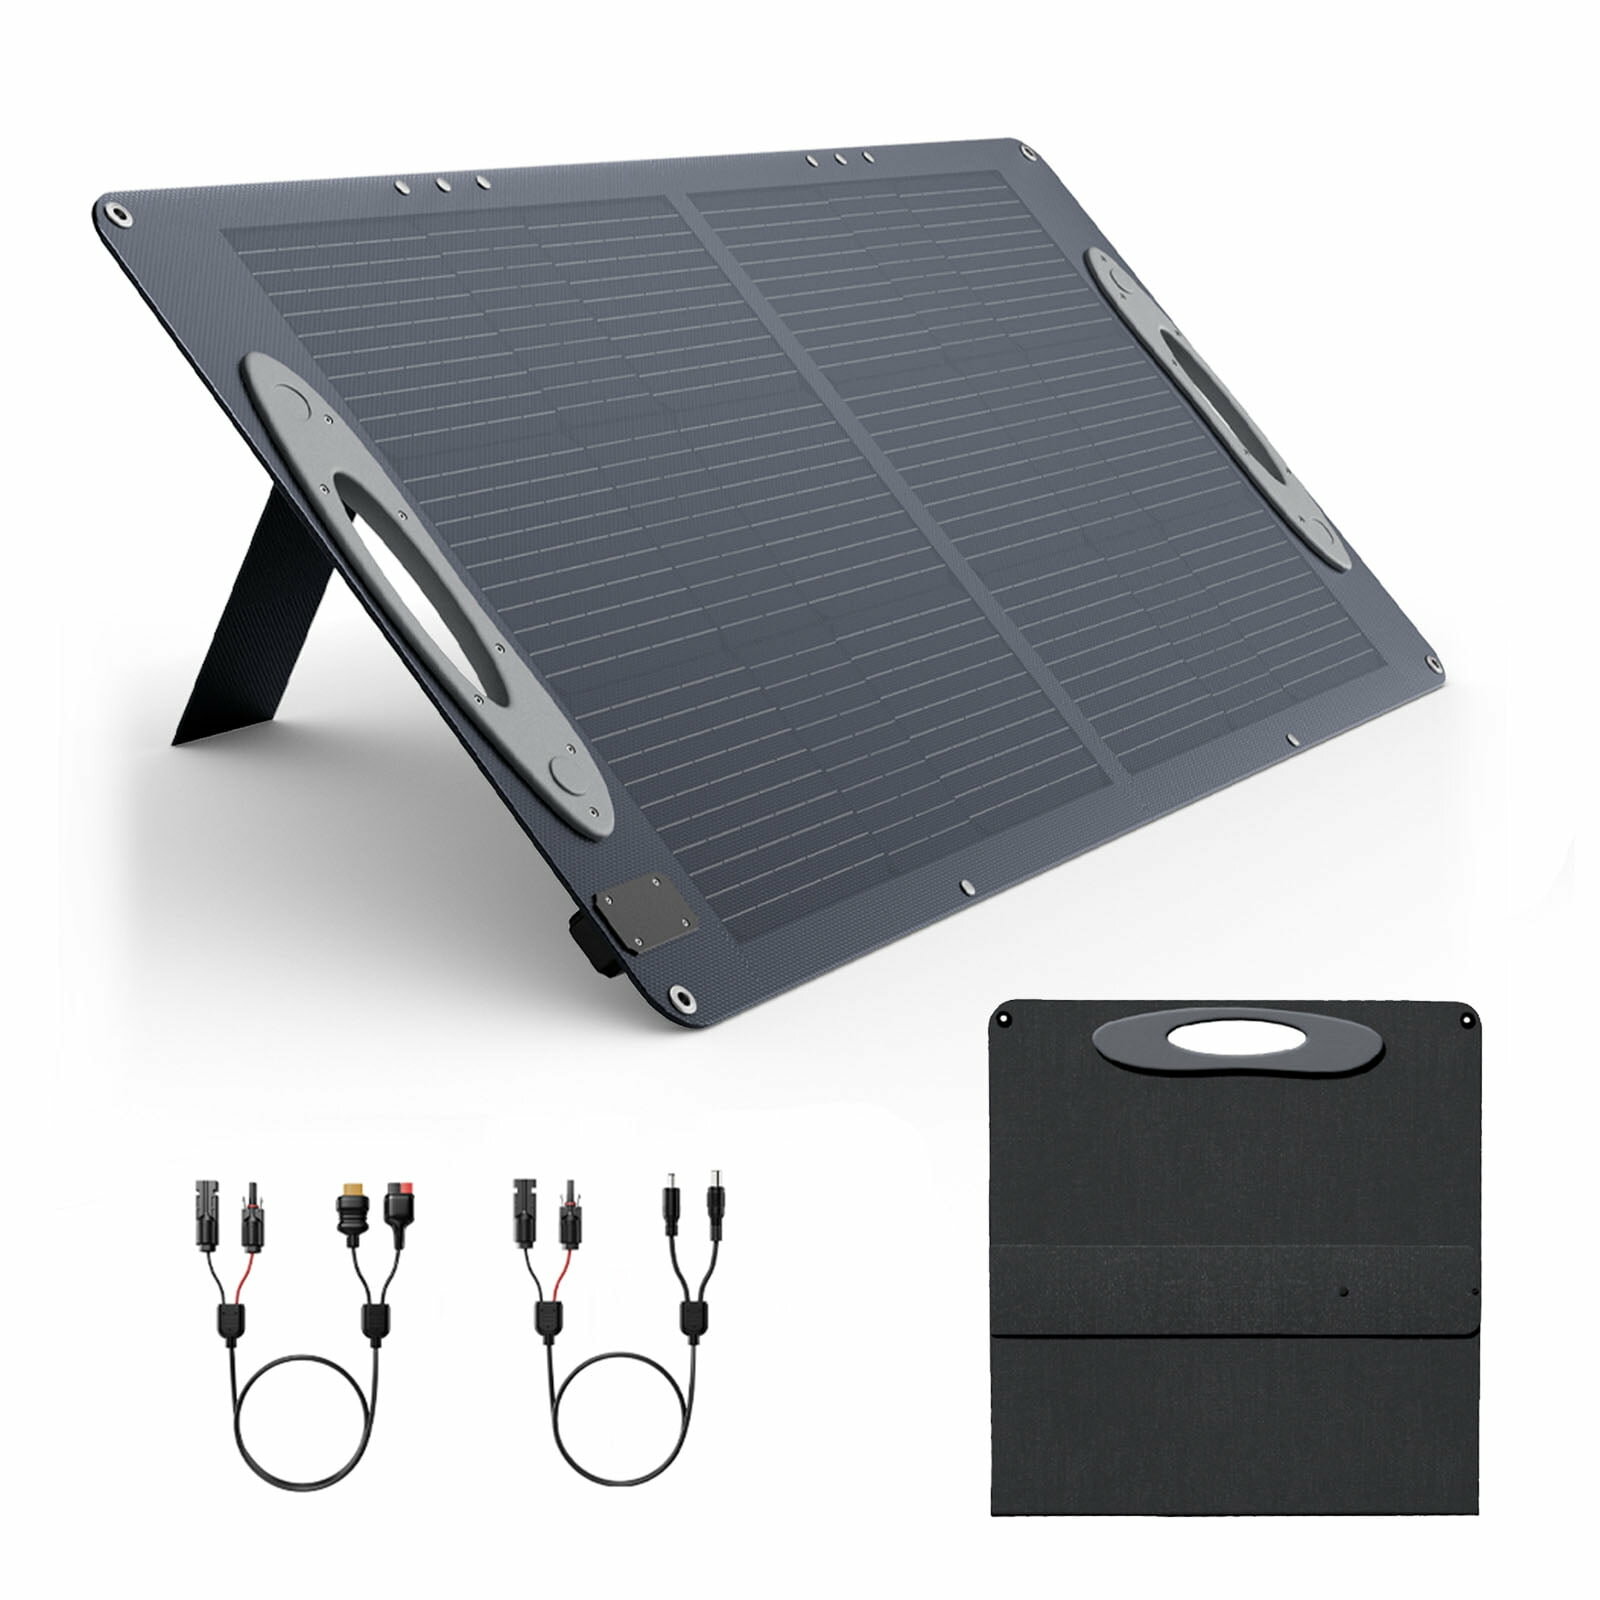 [EU Direct] VDL SC0101 100W ETFE Painel Solar 5V USB 20V DC Multi-Contacto 4 Painéis Solares Multi-Output 23,5% de Eficiência Painel Solar Portátil Dobrável para Pátio, RV, Acampamento ao Ar Livre, Emergência de Queda de Energia